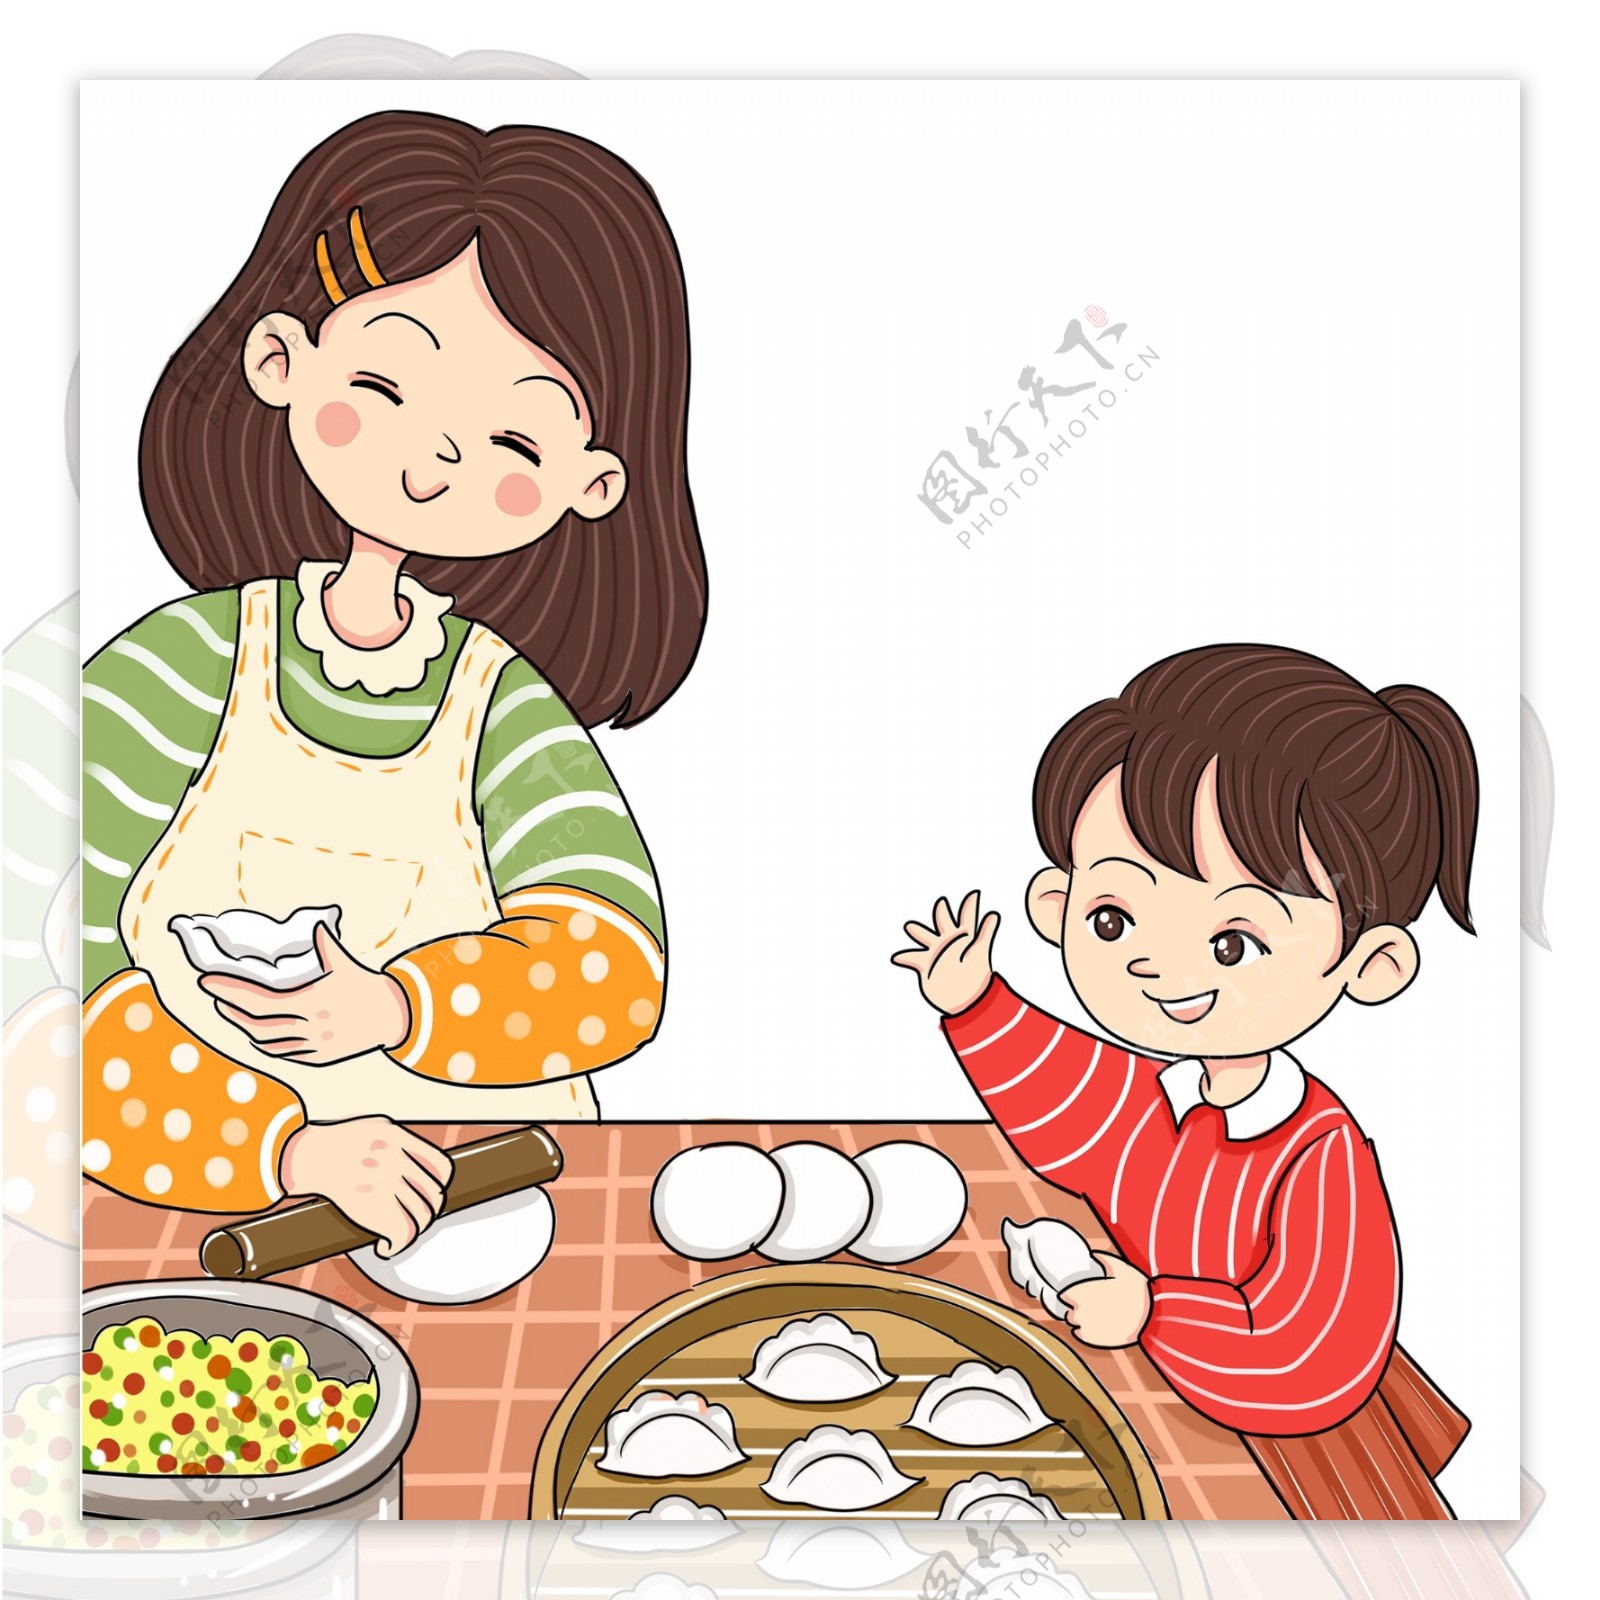 彩绘过年包饺子的母女俩人物插画